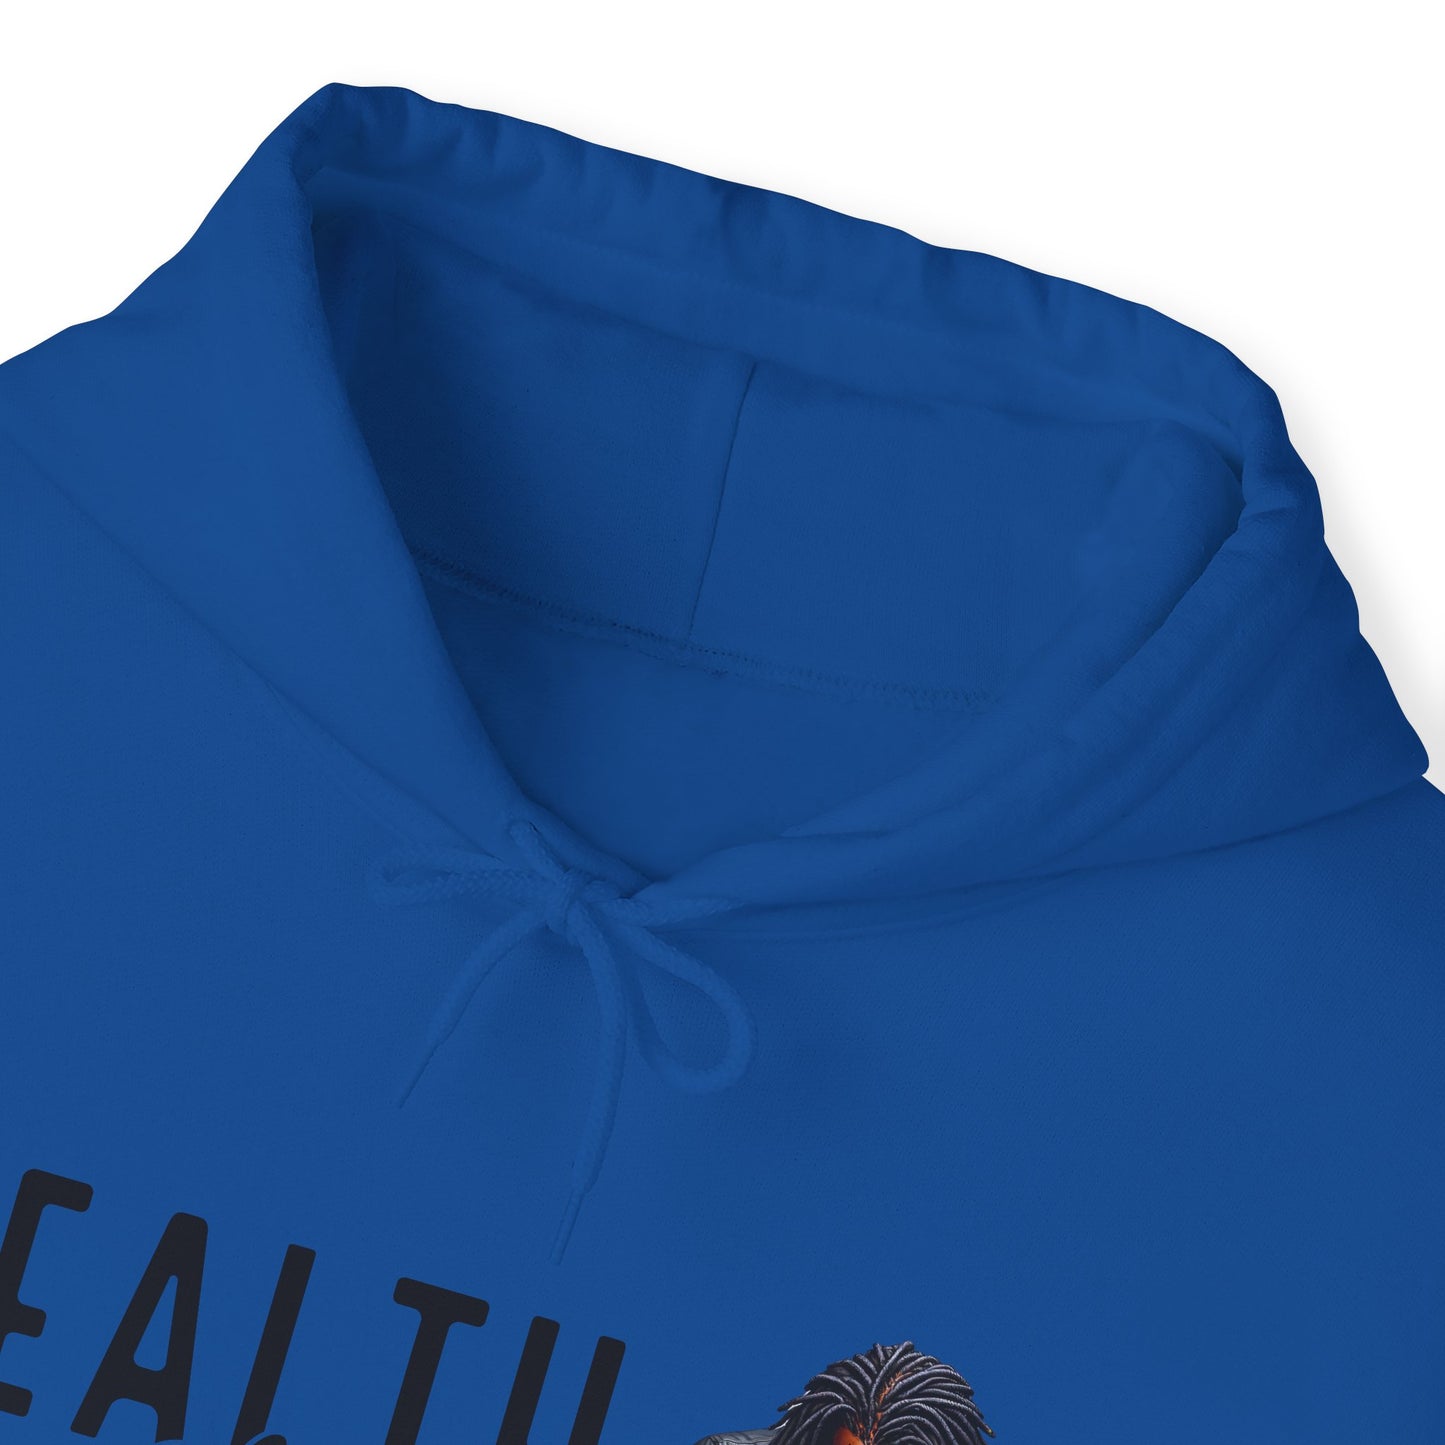 His Mental Health Matters Hooded Sweatshirt